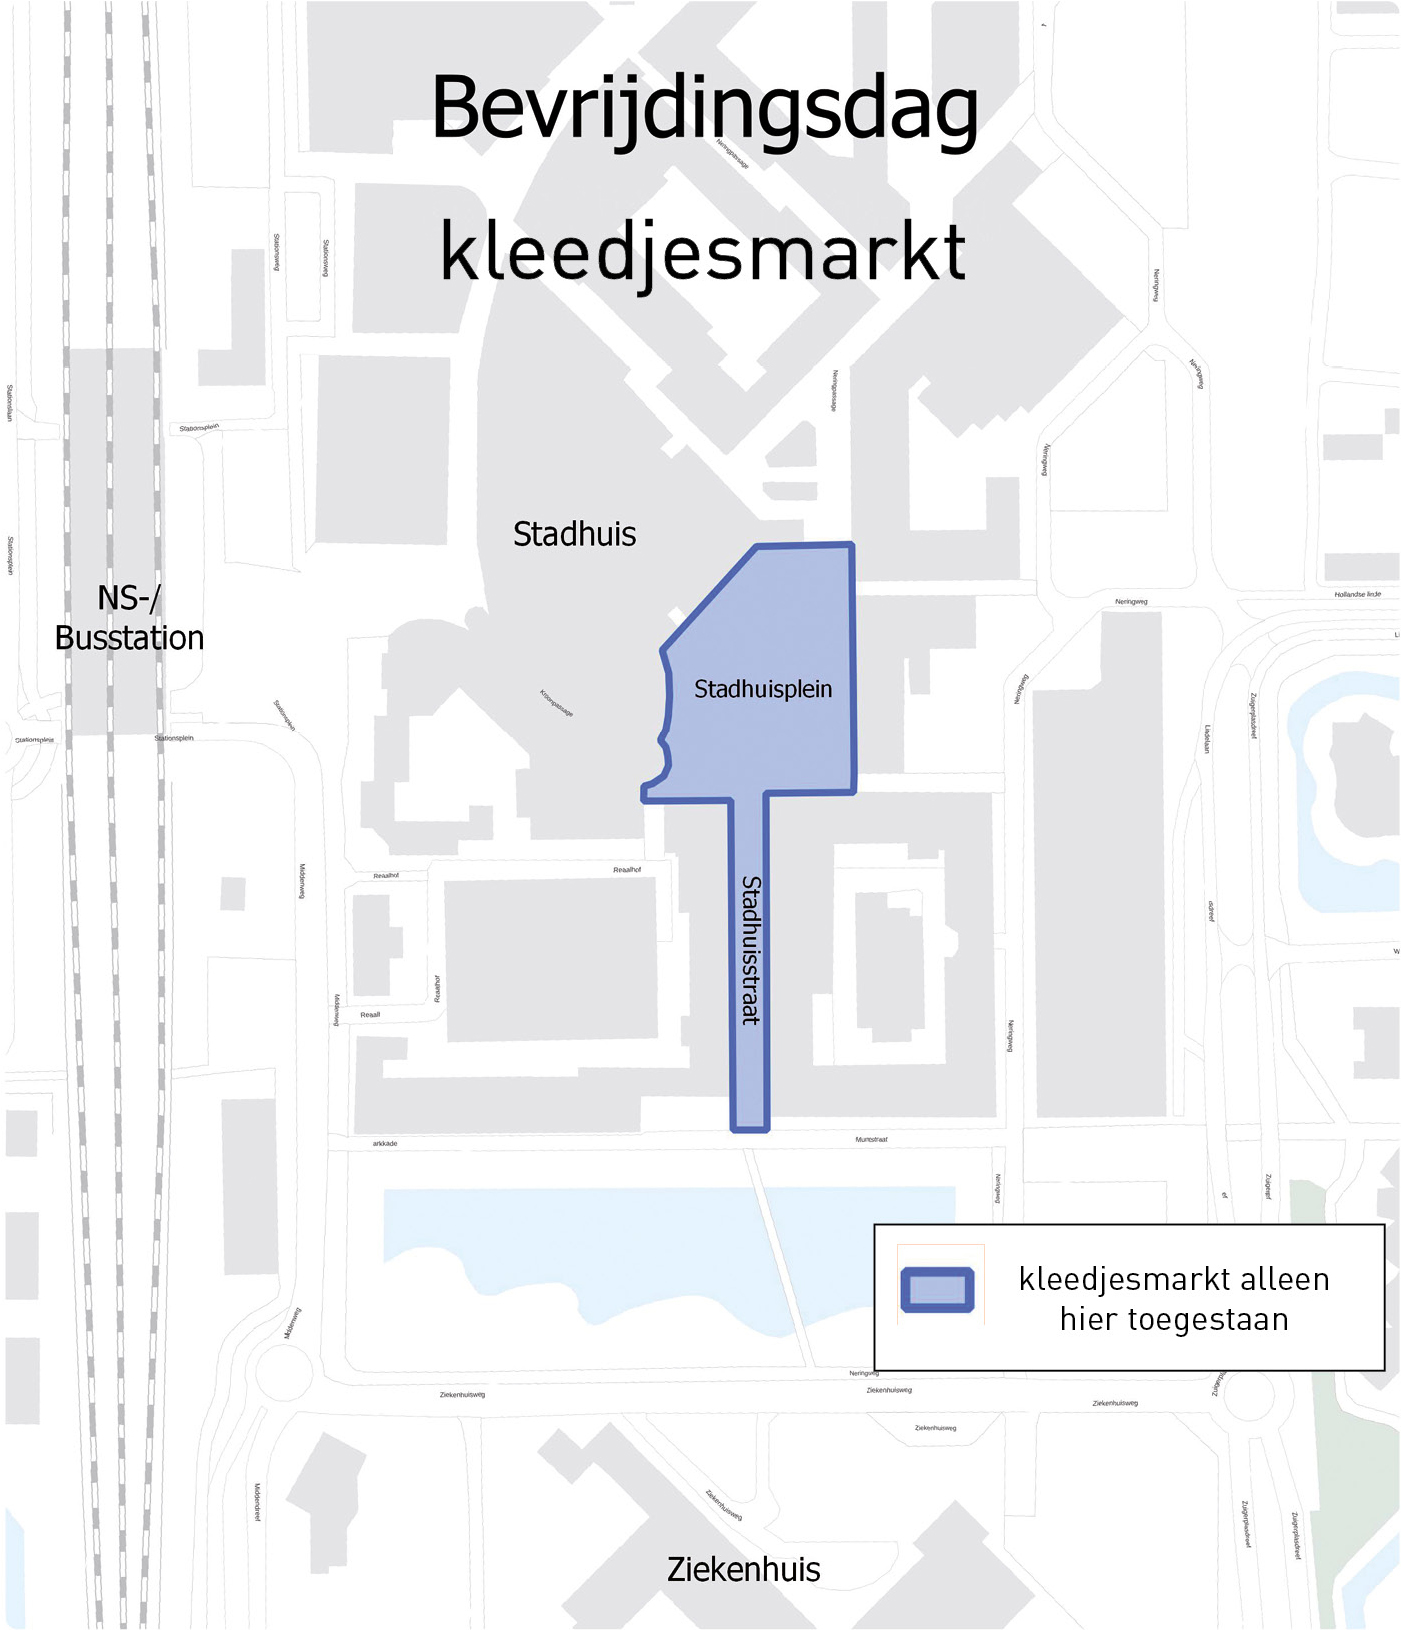 De kleedjesmarkt op Bevrijdingsdag in Lelystad is op het Stadhuisplein en in de Stadhuisstraat. Op andere plekken in de stad is het verkopen van spulletjes niet toegestaan